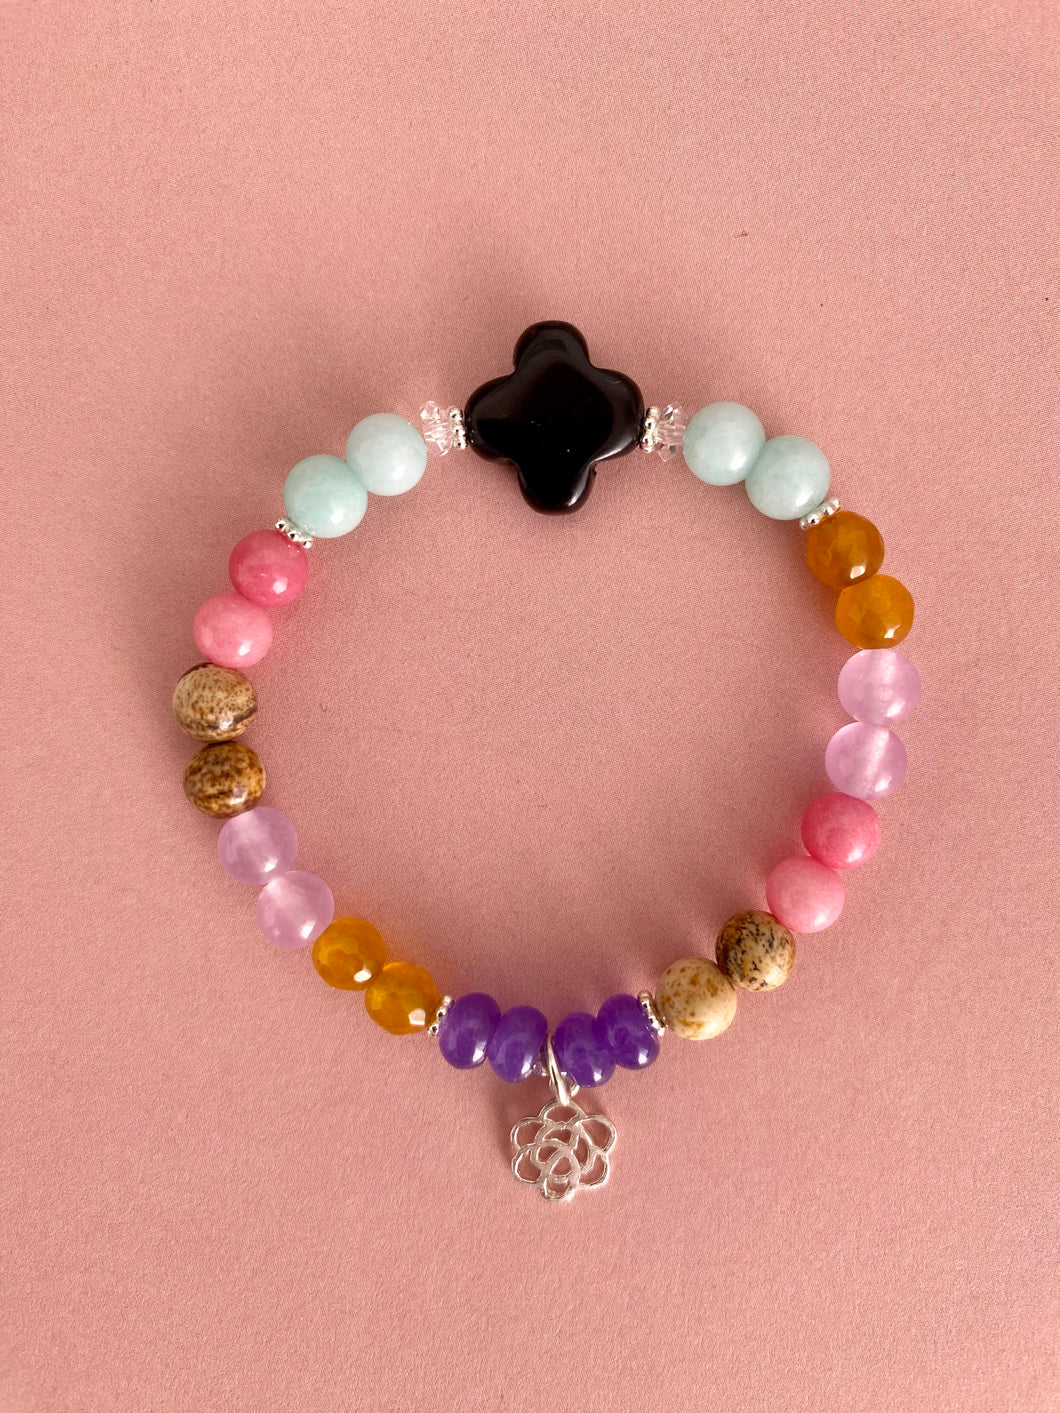 Jellybean bracelet